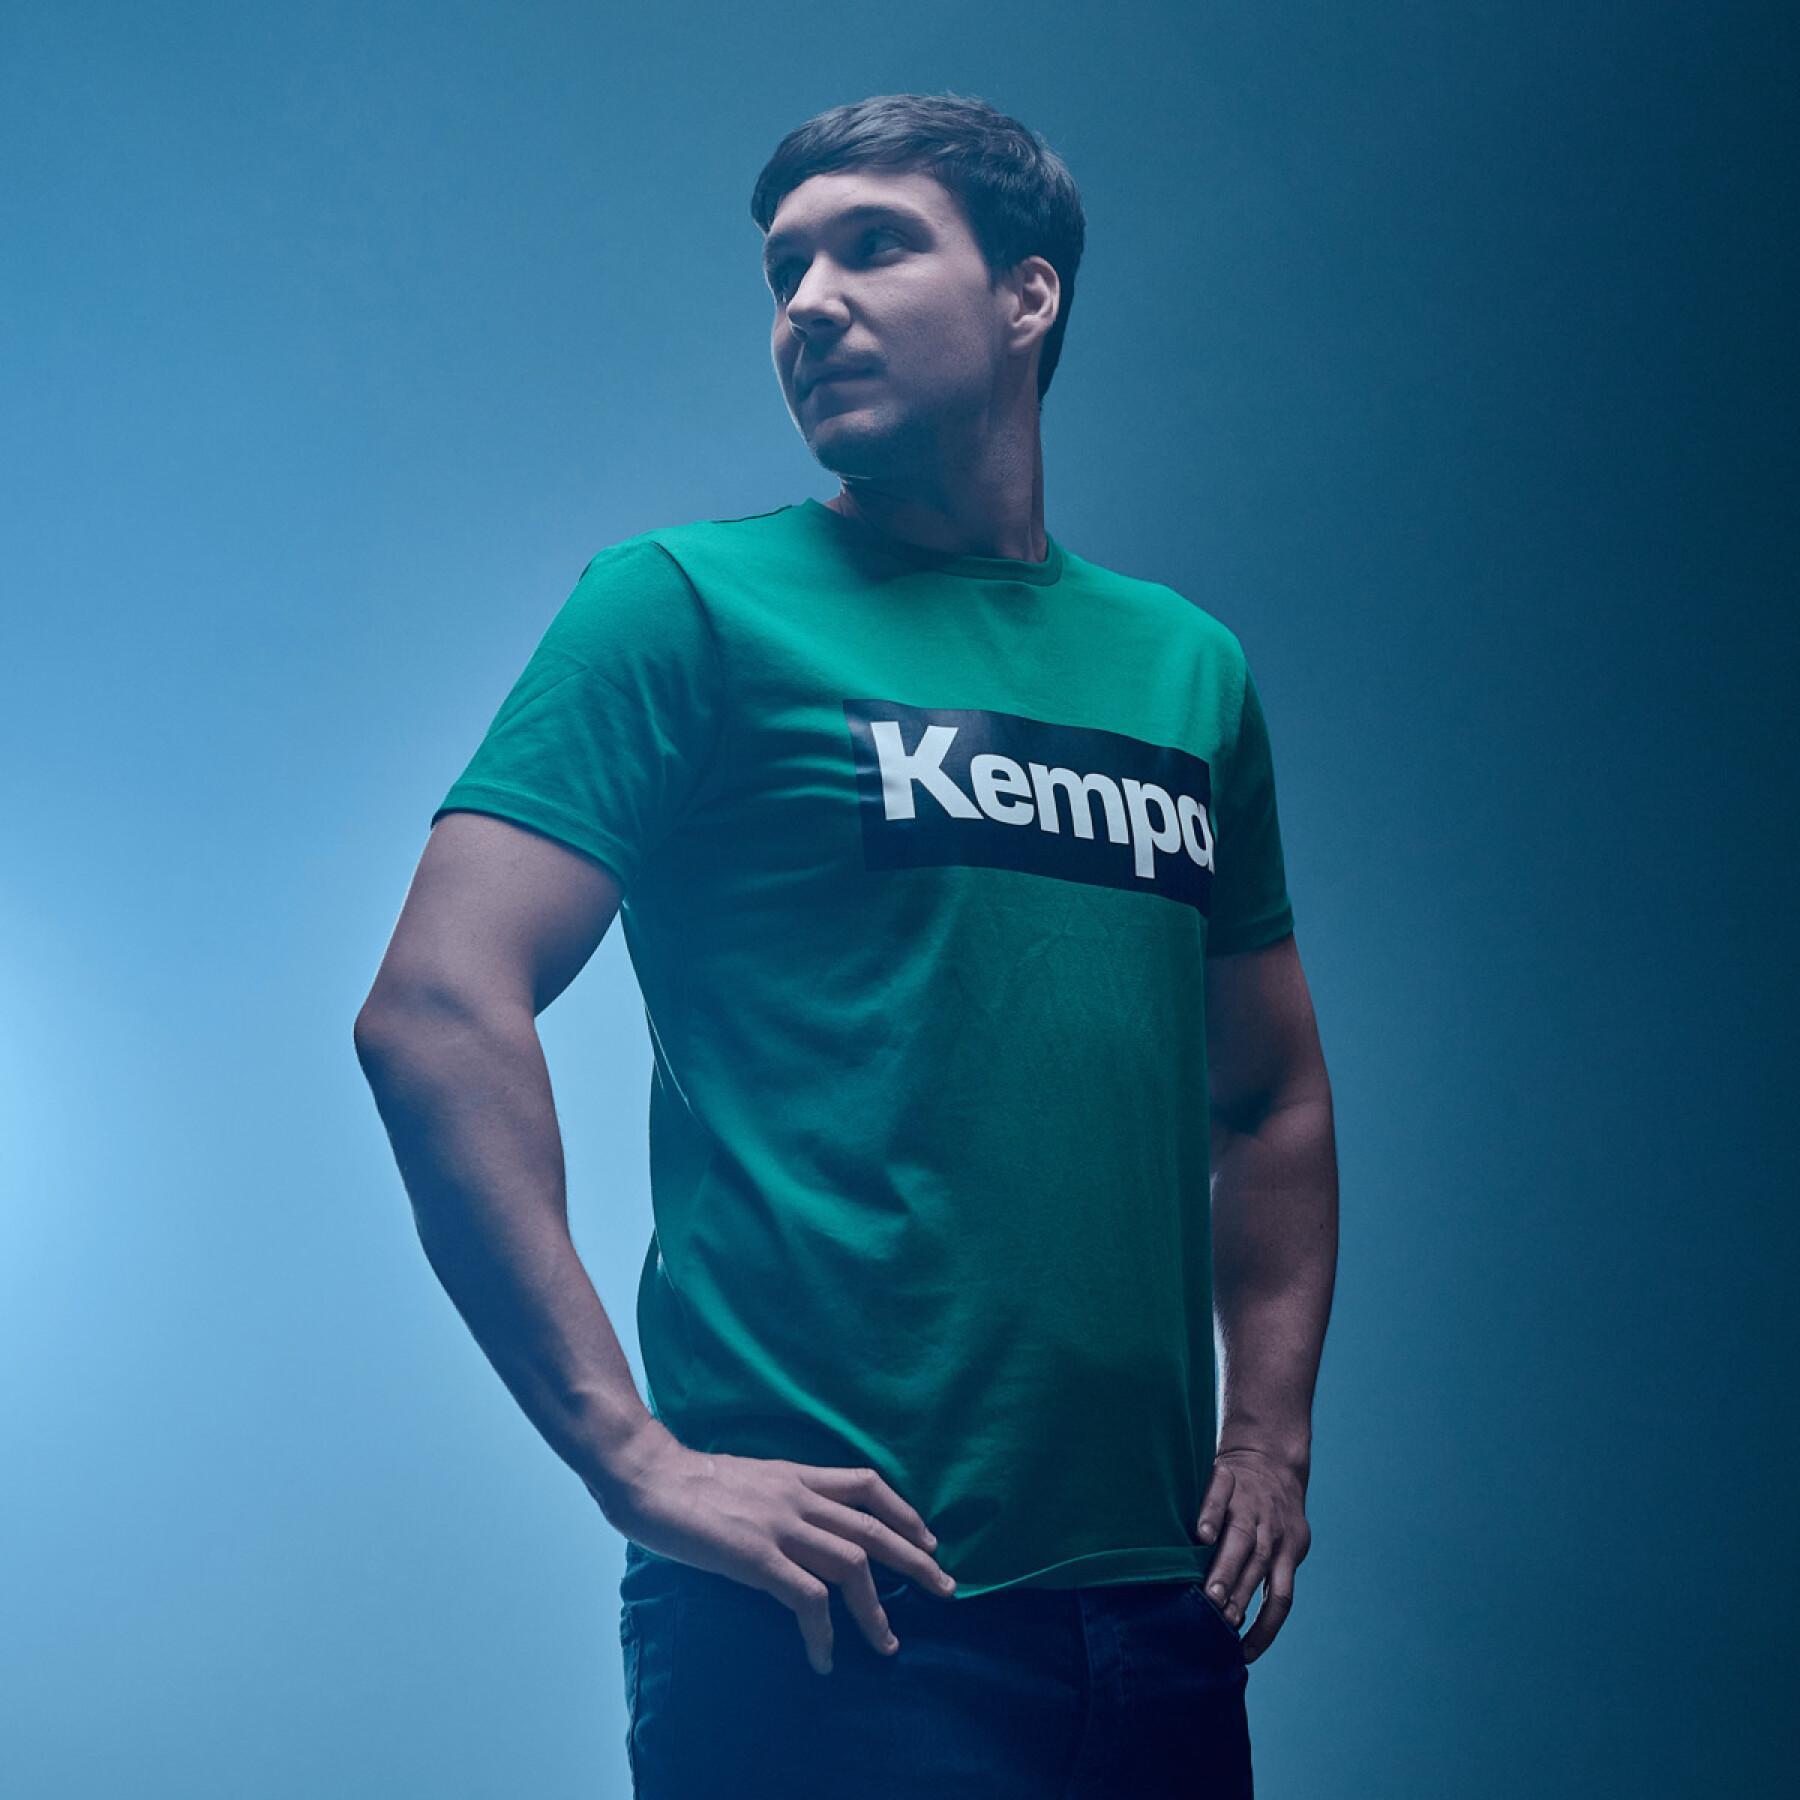 T-shirt Kempa Promo